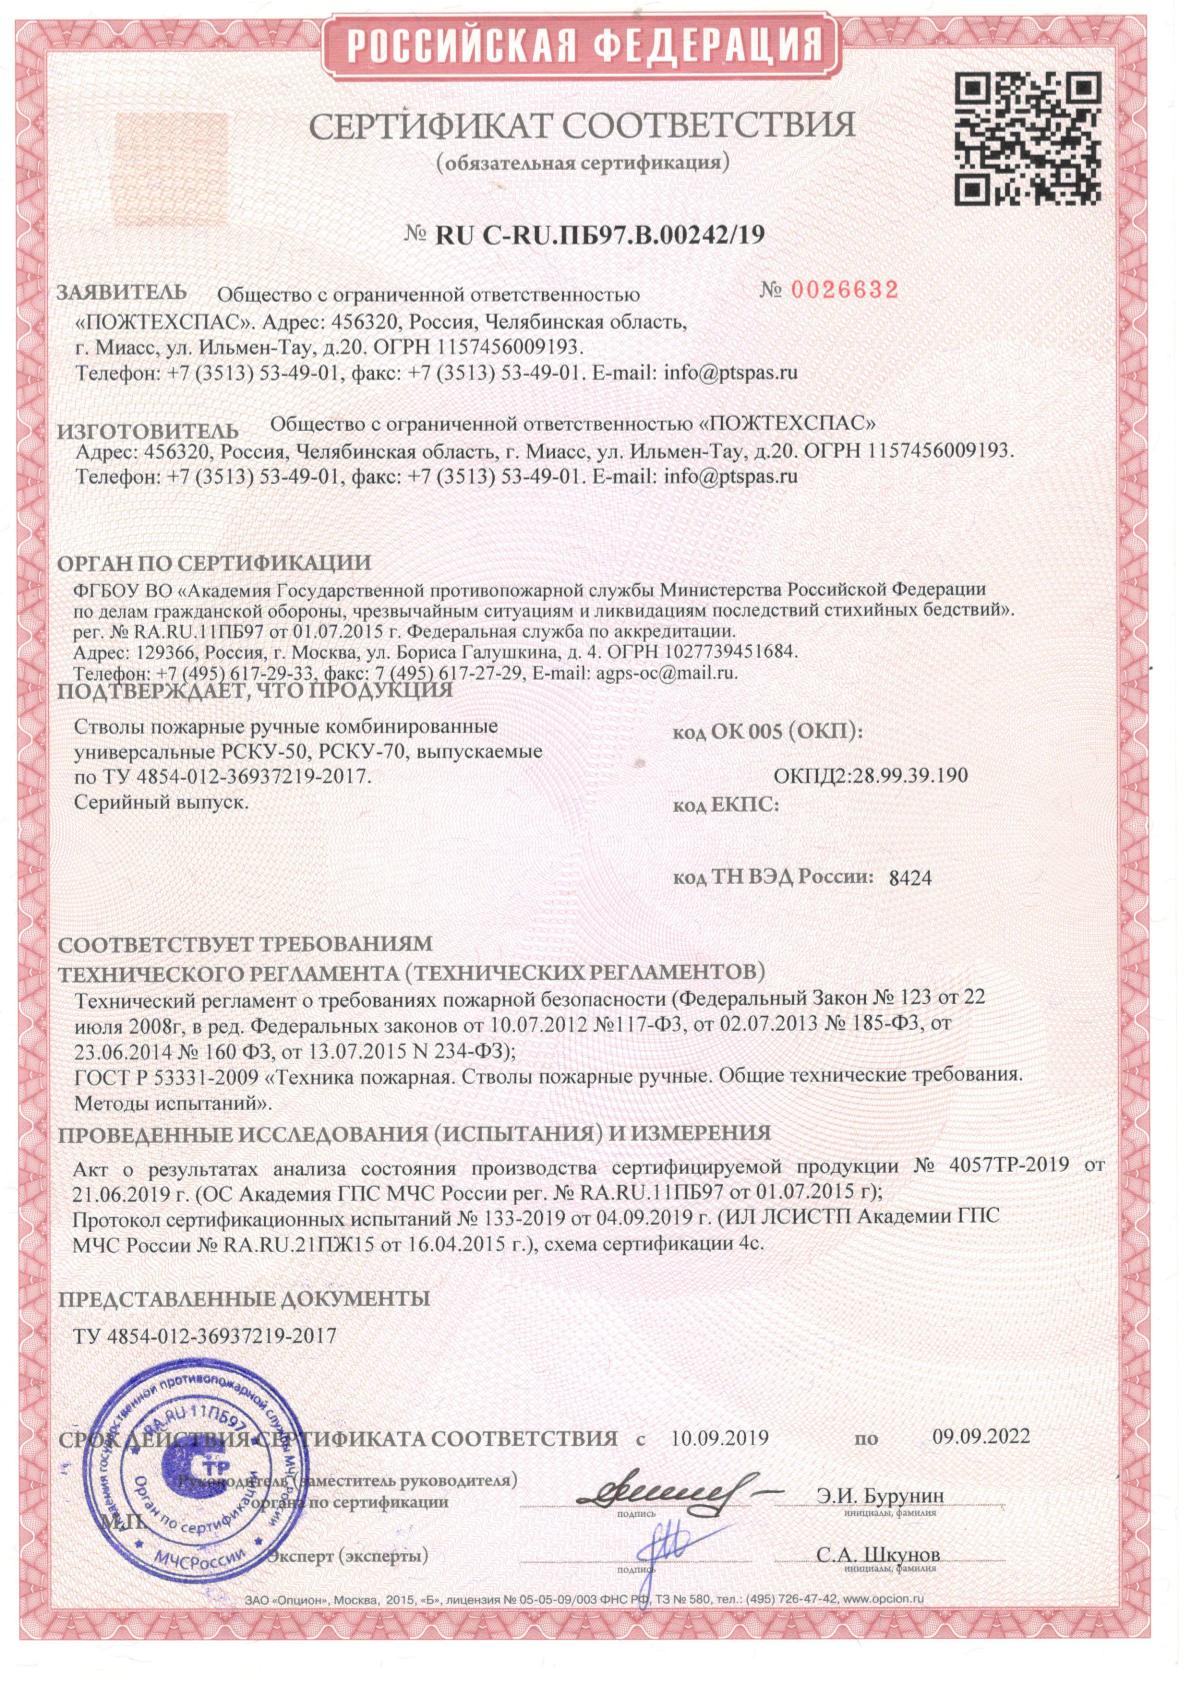 Сертификат соответствия стволы пожарные ручные комбинированные универсальные РСКУ-50, РСКУ-70